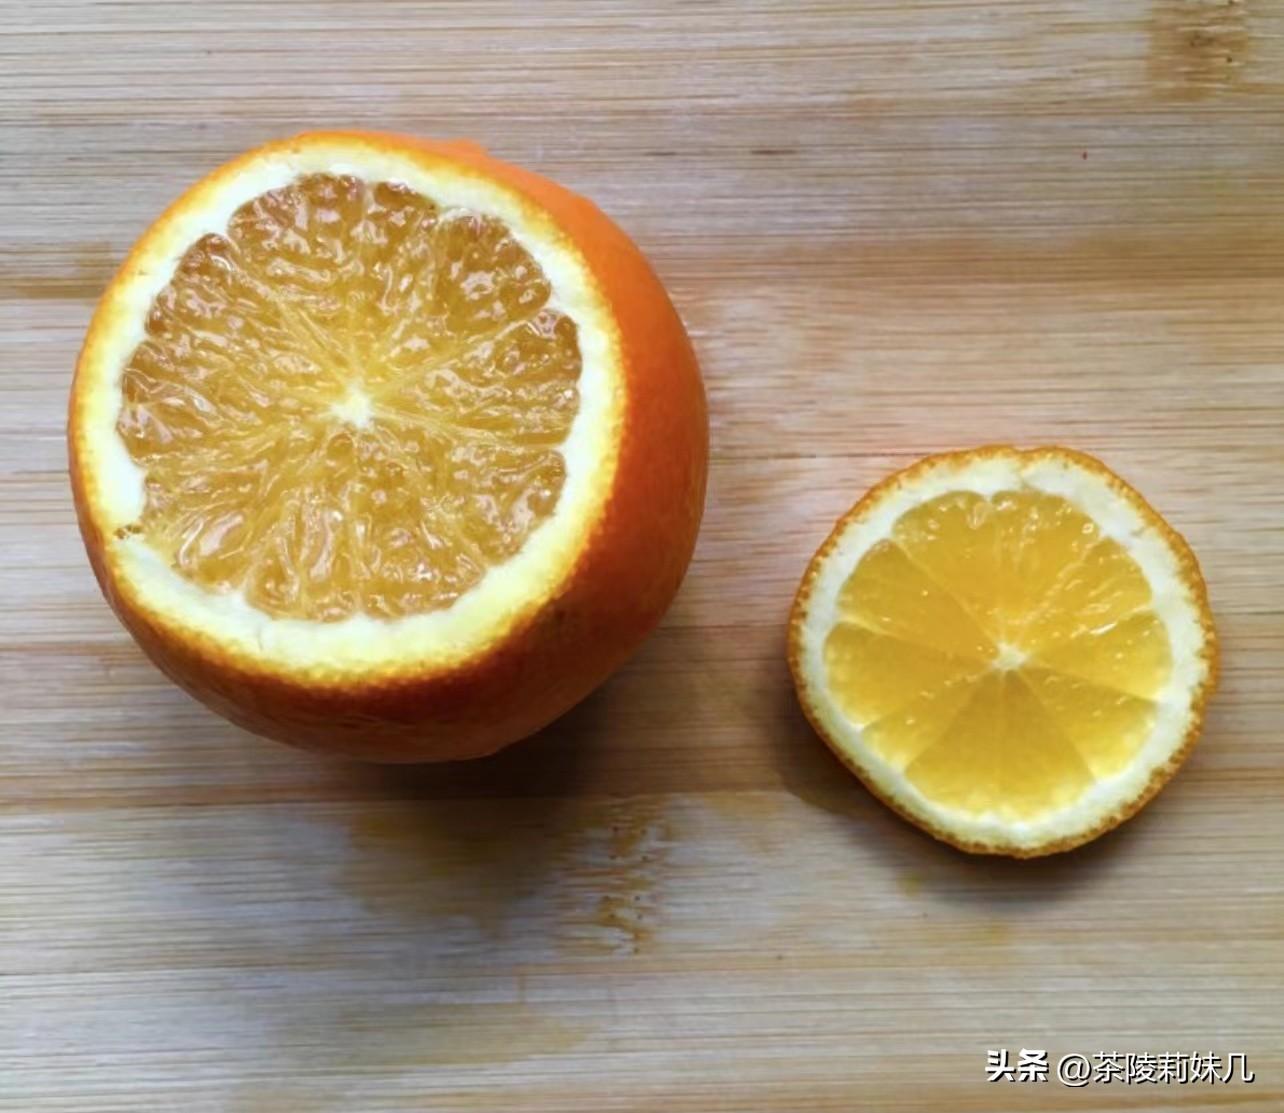 一个橙子一点盐，入锅一蒸，祛风化痰又止咳，橙子蒸盐的功效及做法 快告诉家人朋友！